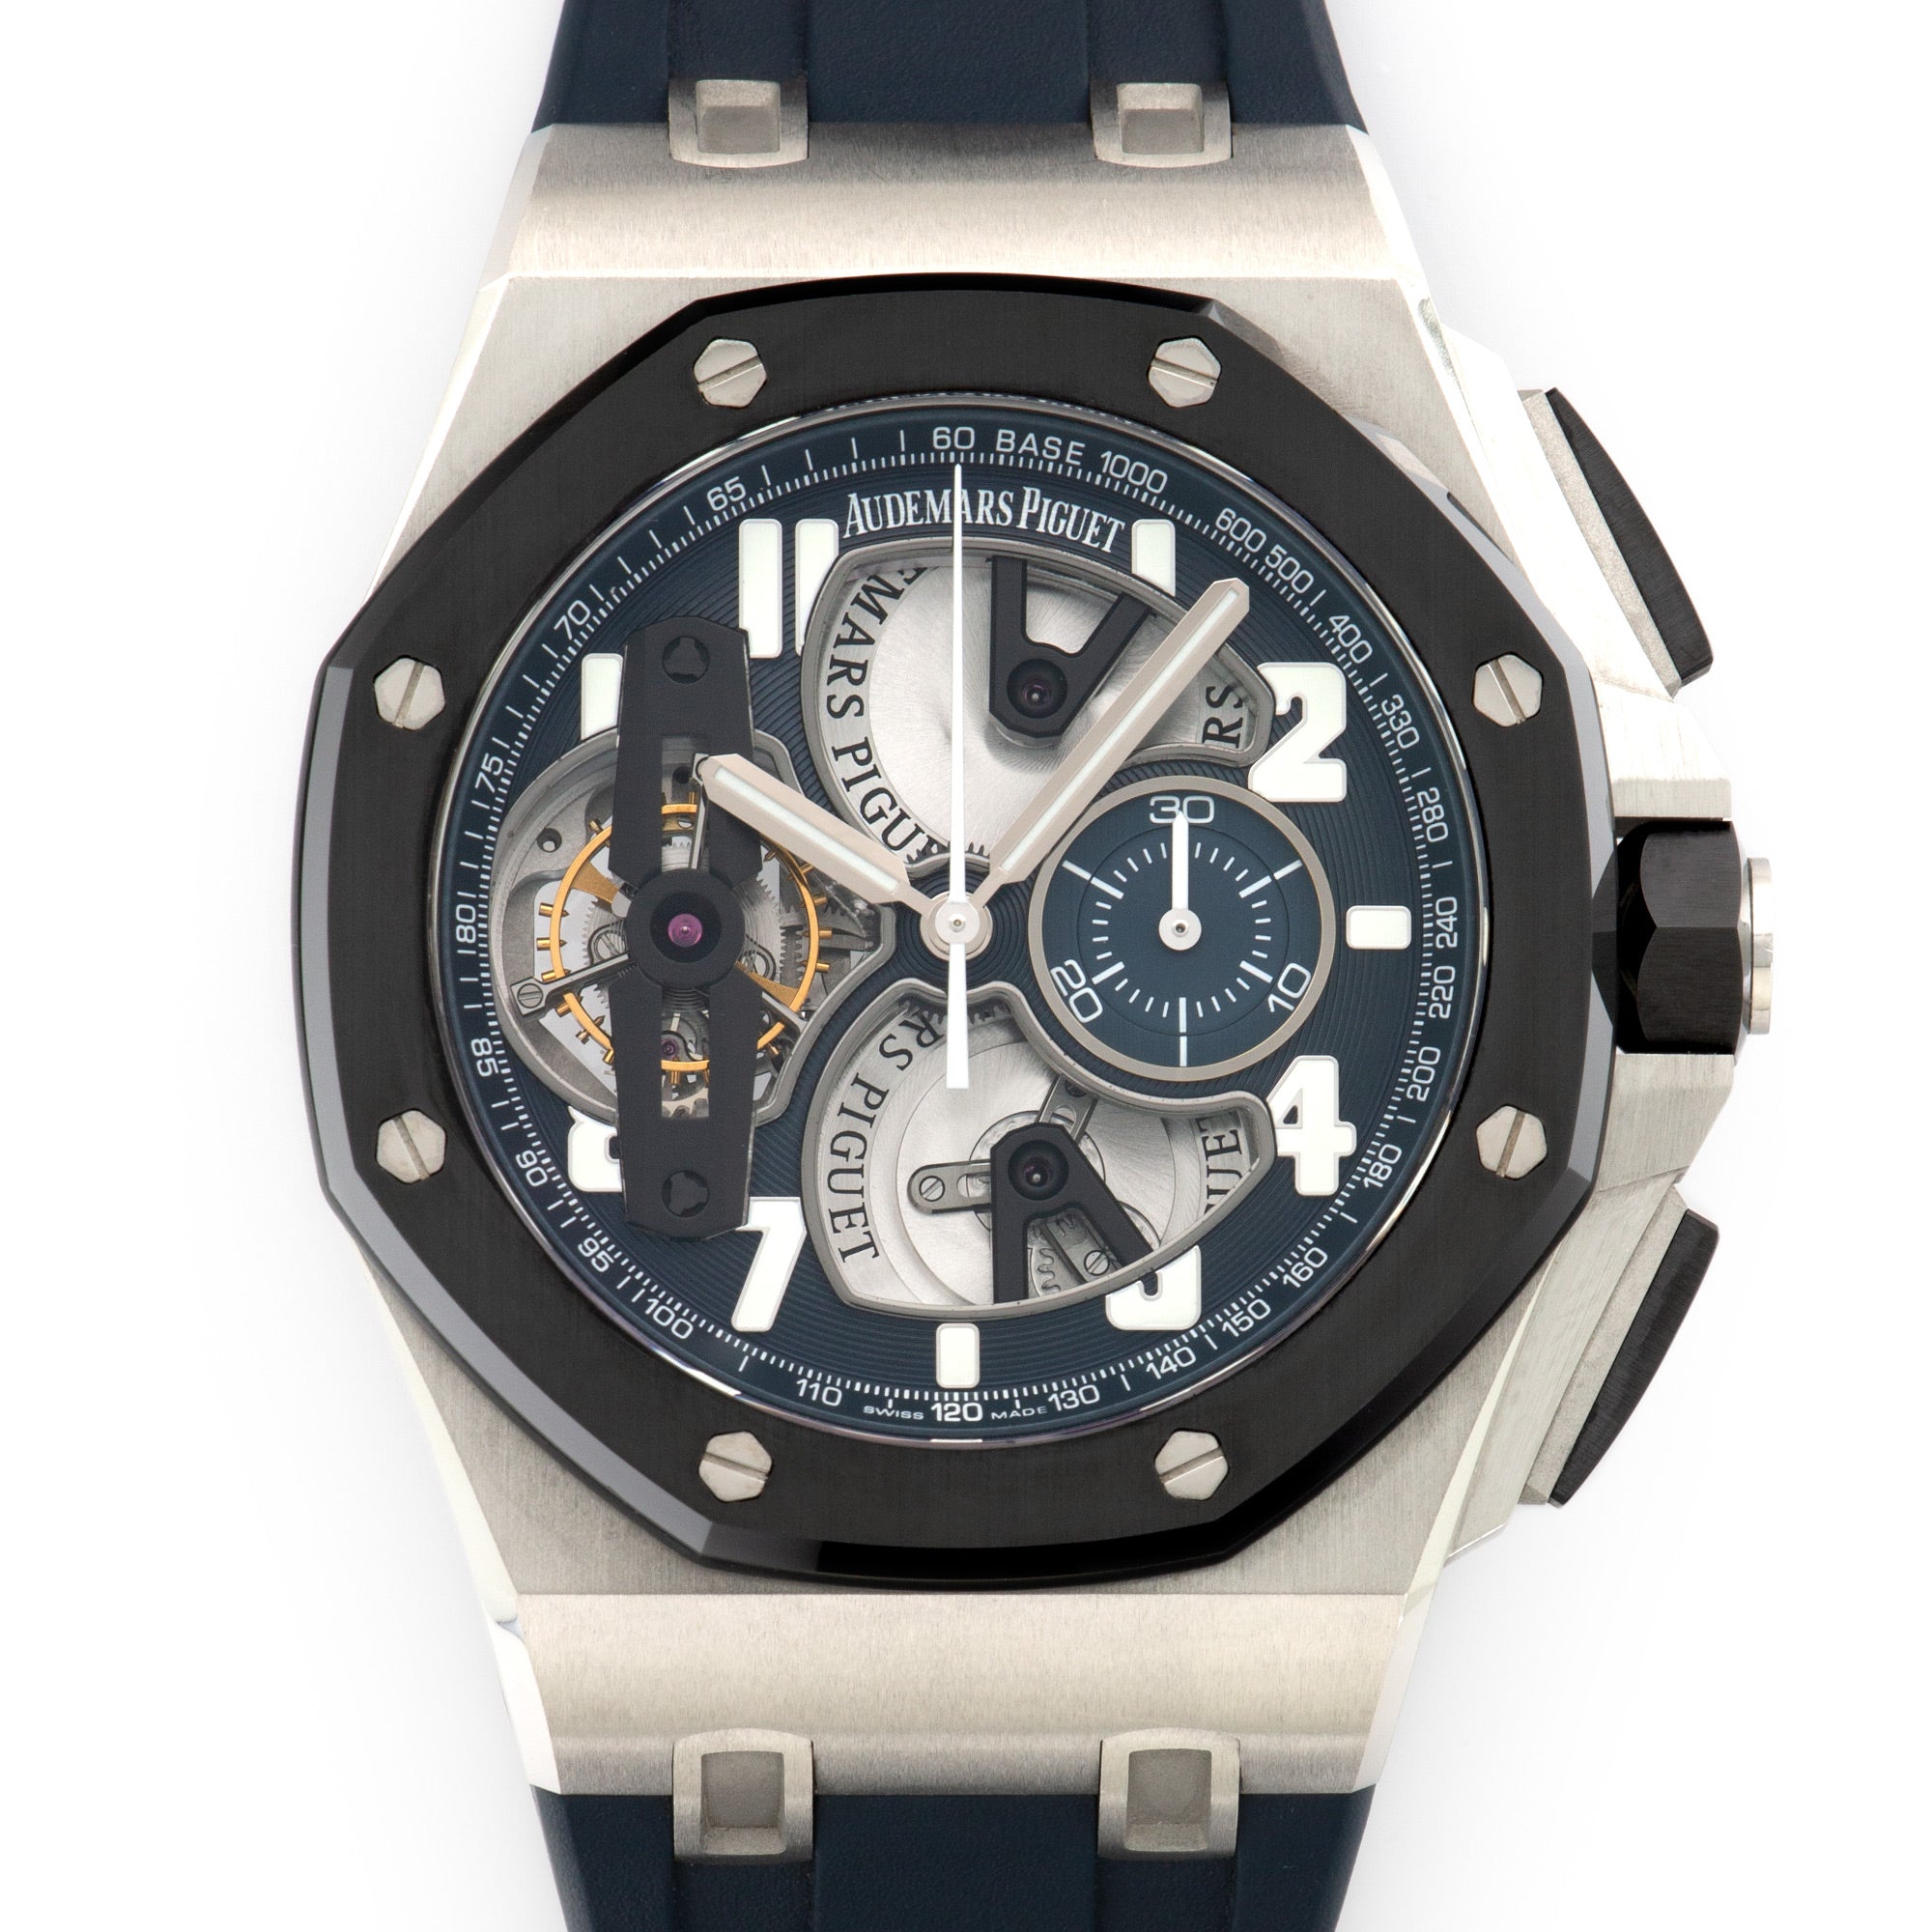 Audemars Piguet - Audemars Piguet Platinum Royal Oak Offshore Tourbillon Watch Ref. 26388 - The Keystone Watches